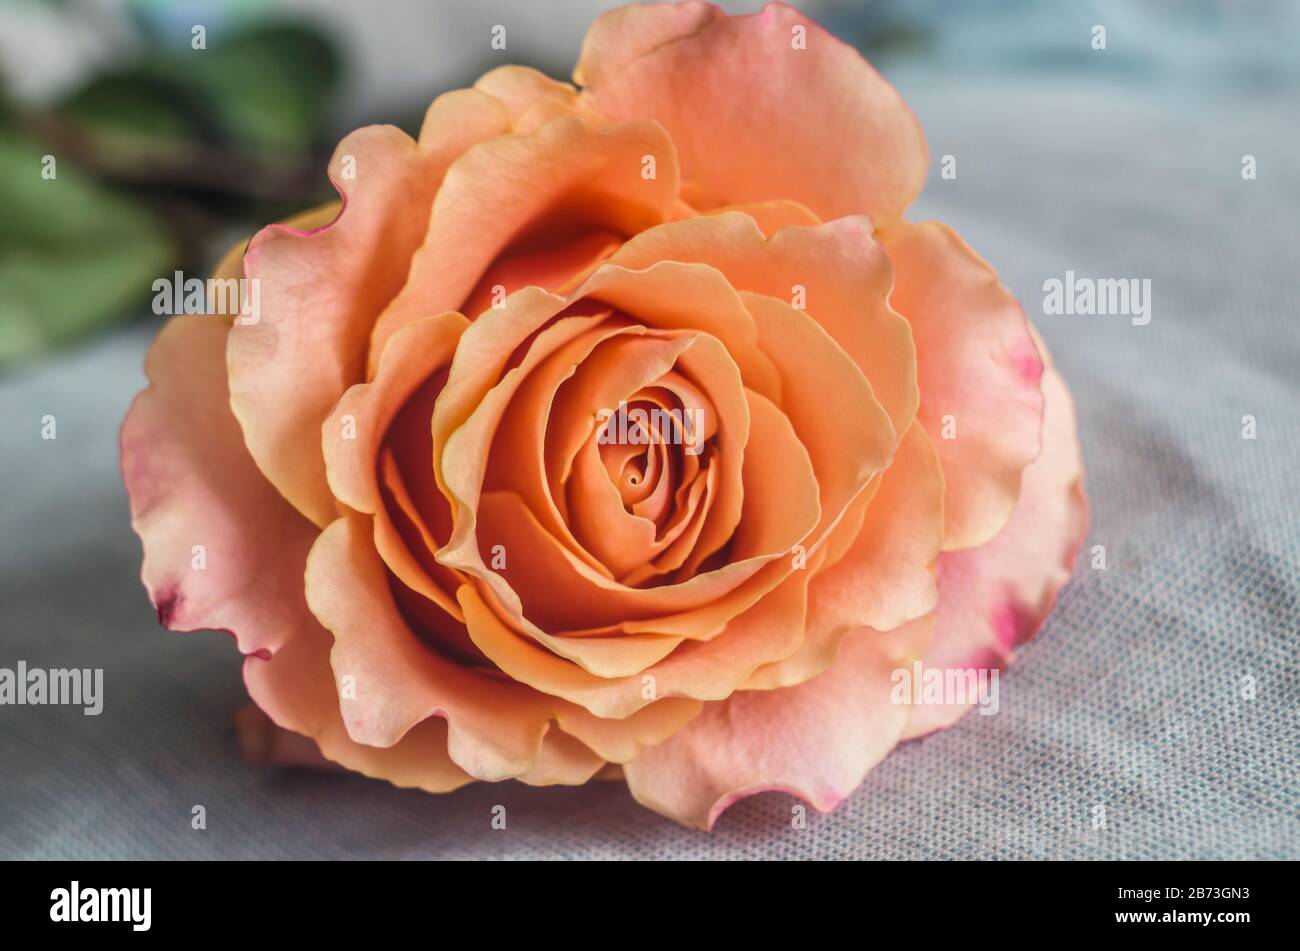 Belle abricot unique rose sur un fond gris flou. Photo de rose de thé. Banque D'Images